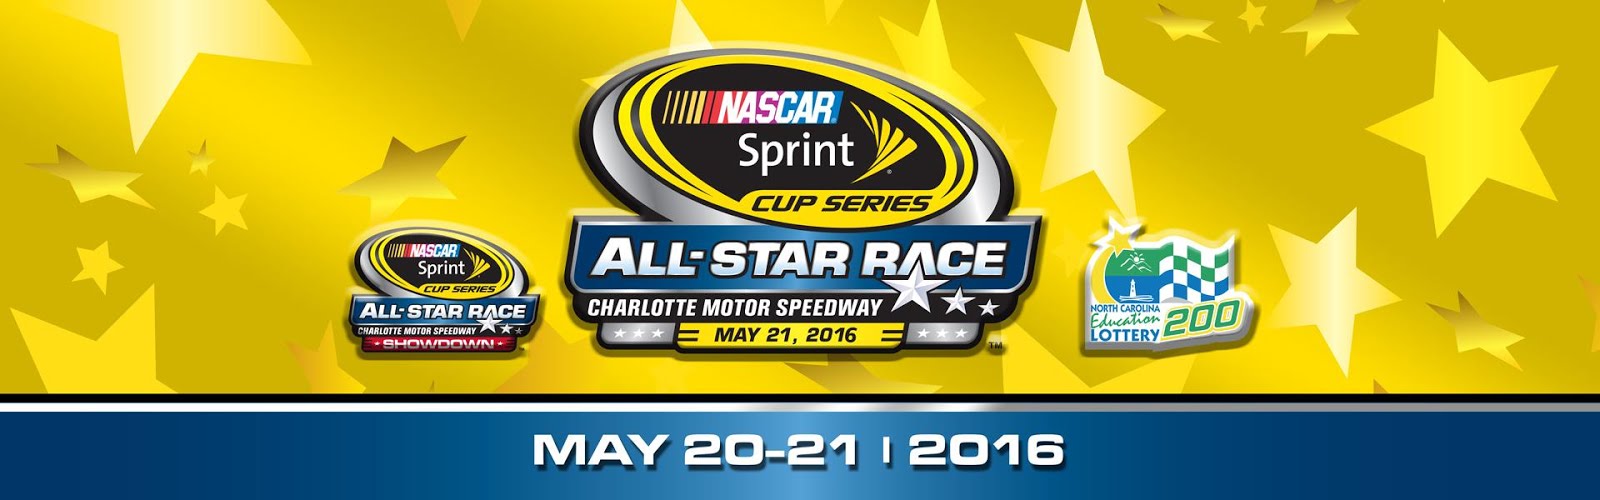 NASCAR Sprint Cup Series 2016